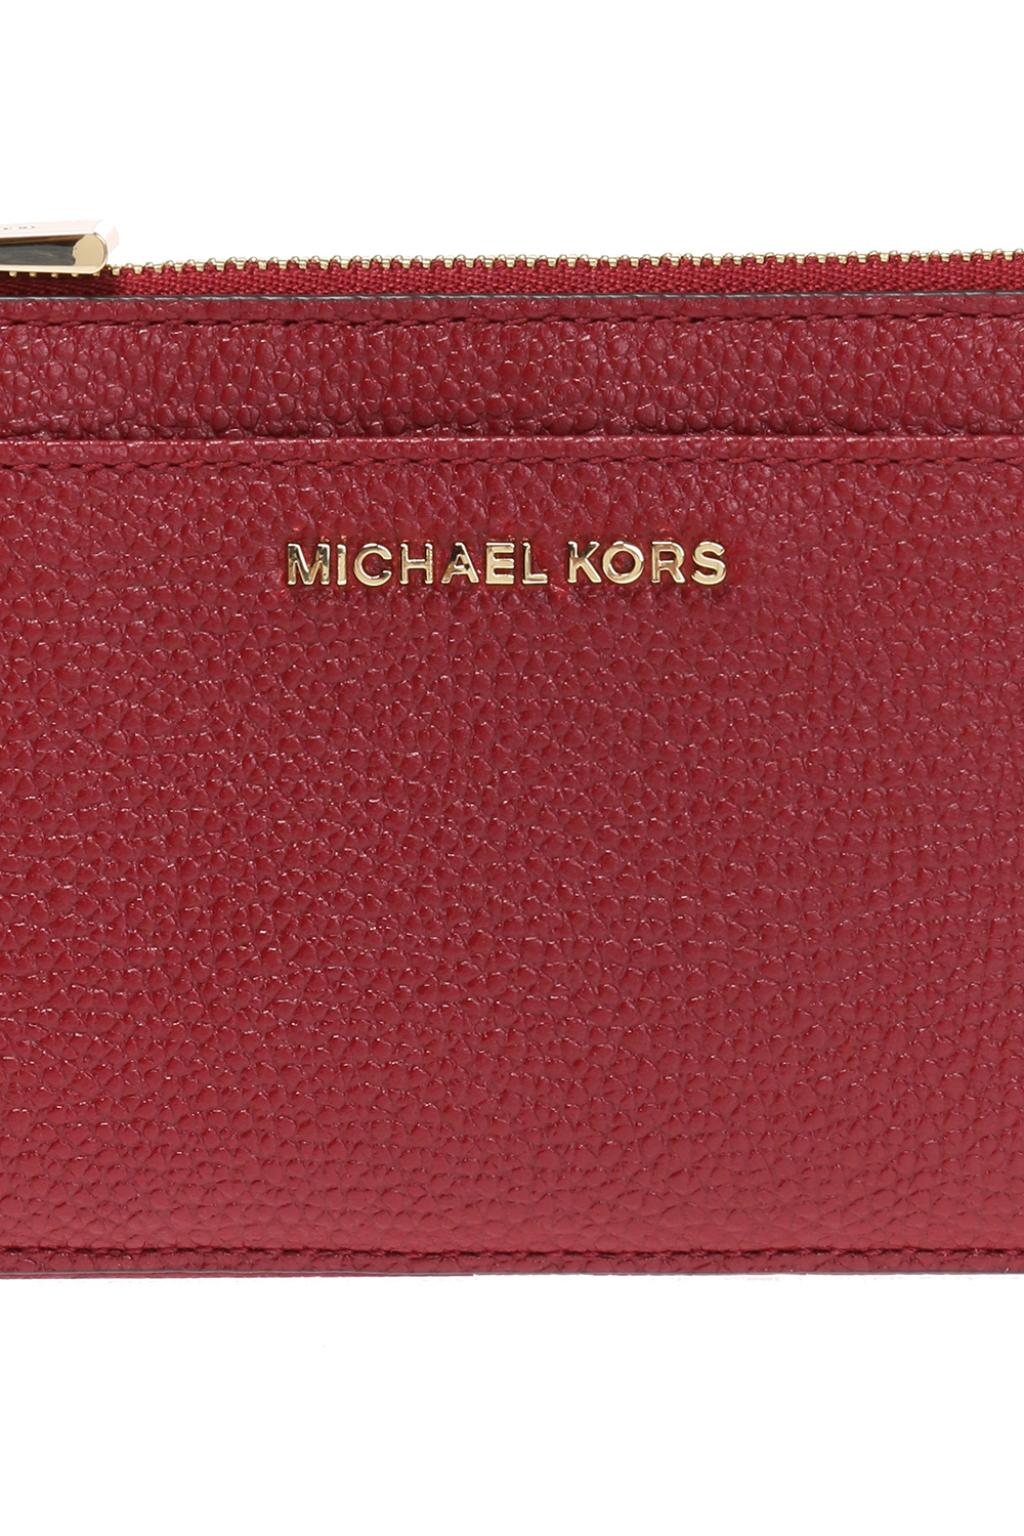 Michael Michael Kors Wallet with metal logo, Women's Accessories